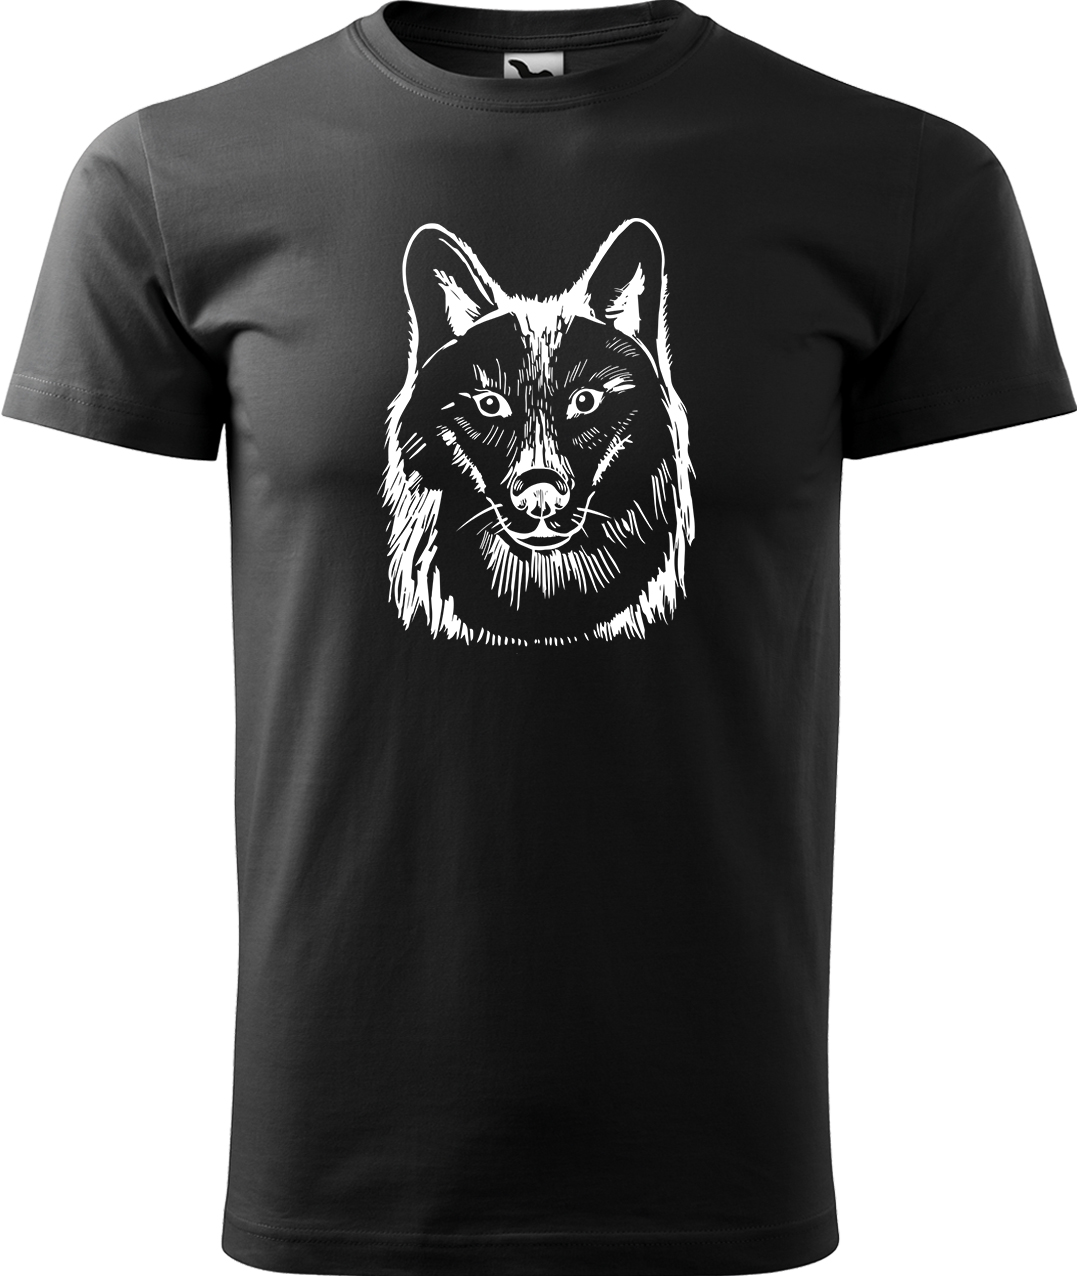 Pánské tričko s vlkem - Kresba vlka Velikost: S, Barva: Černá (01), Střih: pánský